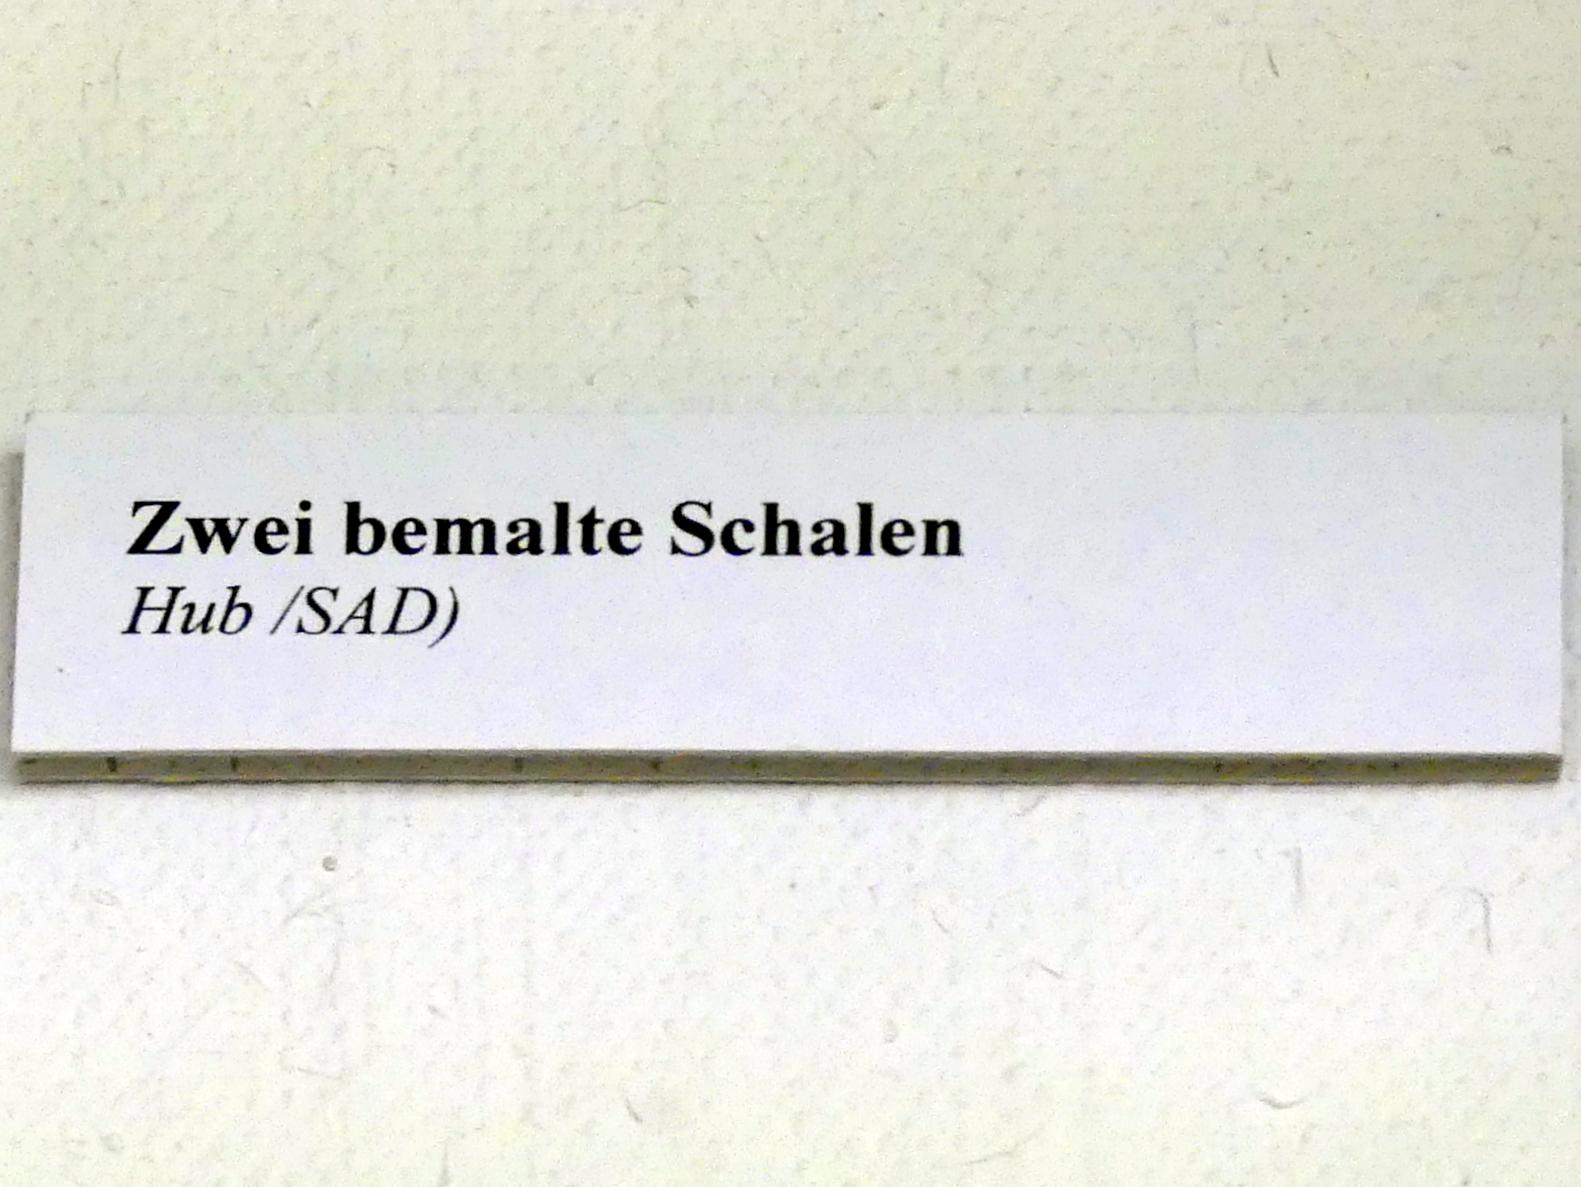 Bemalte Schale, Hallstattzeit, 700 - 200 v. Chr., Bild 2/2